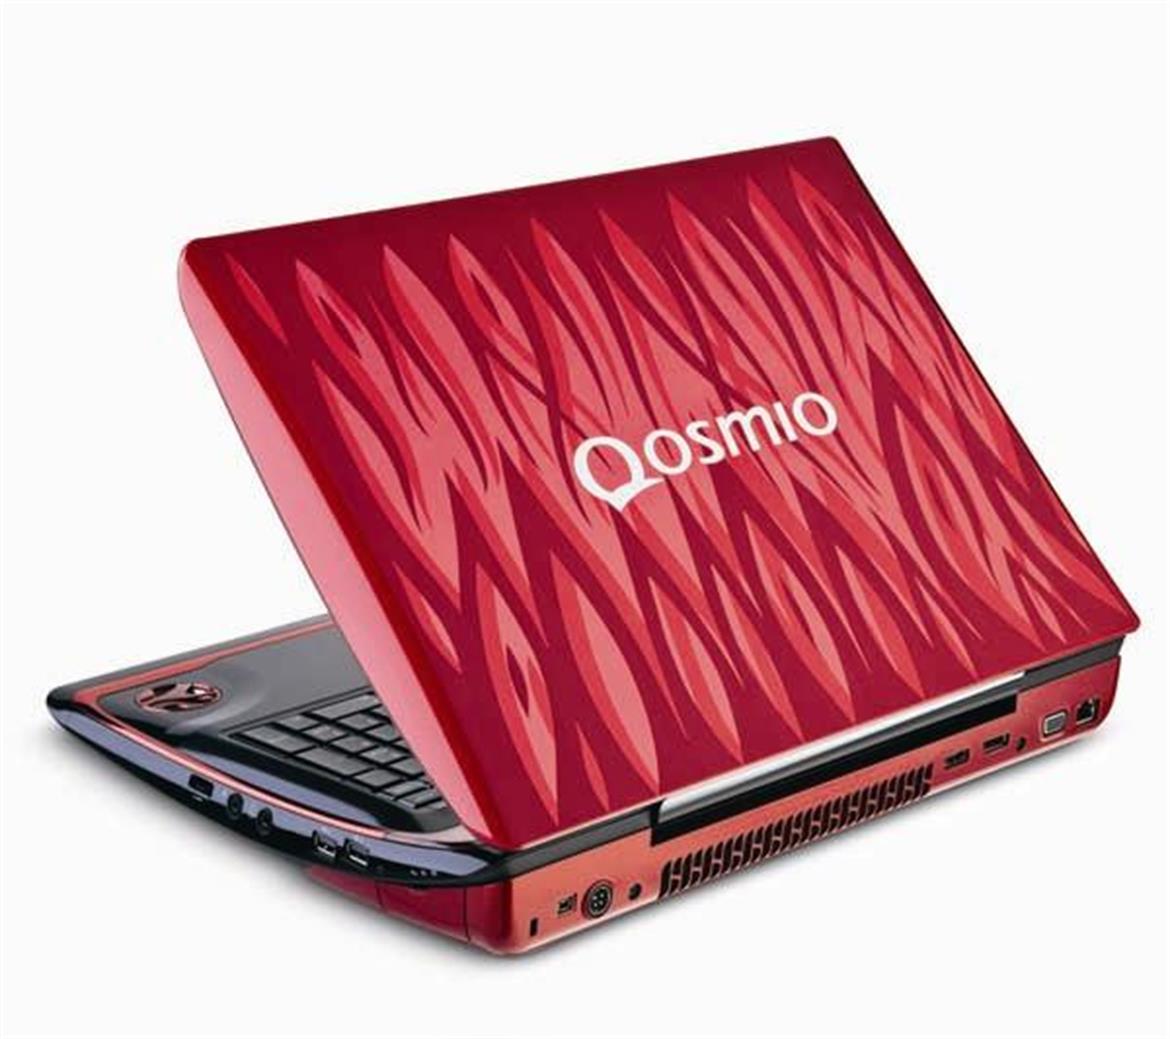 Toshiba Qosmio X305-Q725 Gaming Notebook